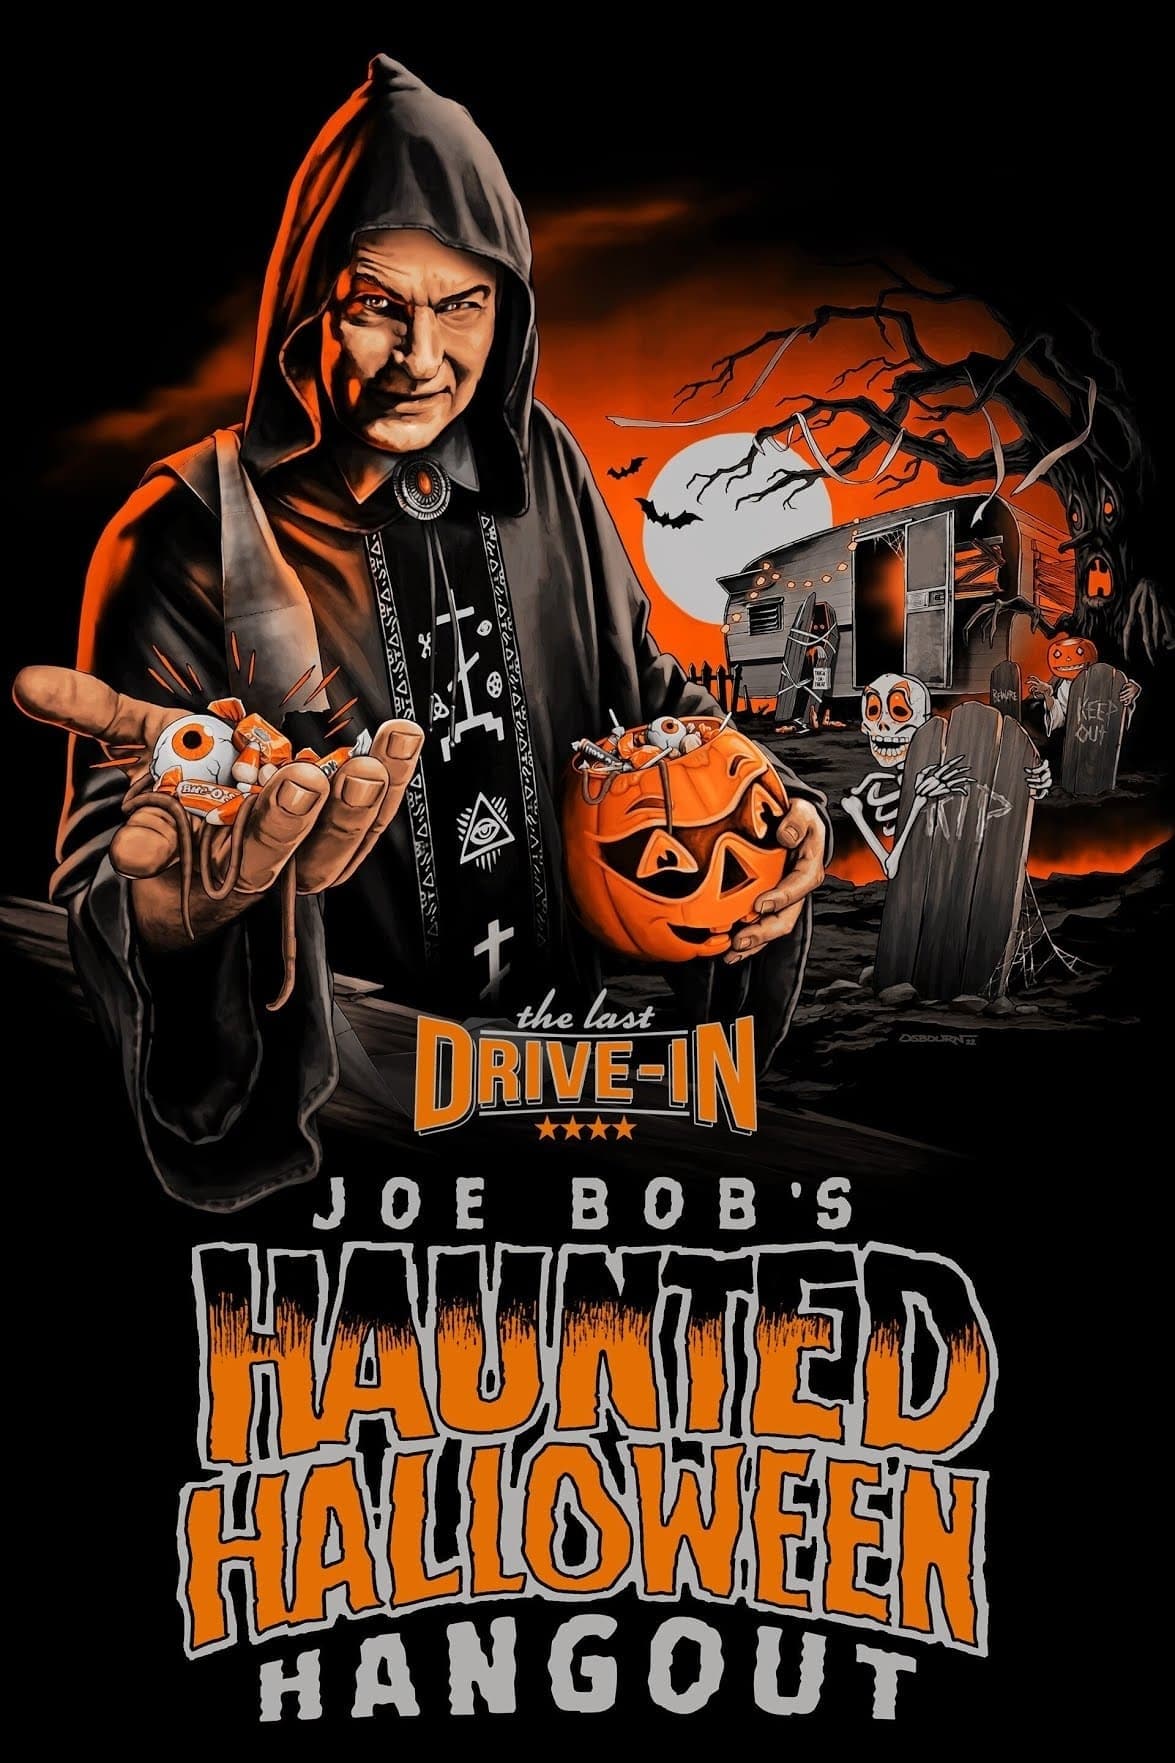 Joe Bob's Haunted Halloween Hangout Season 1